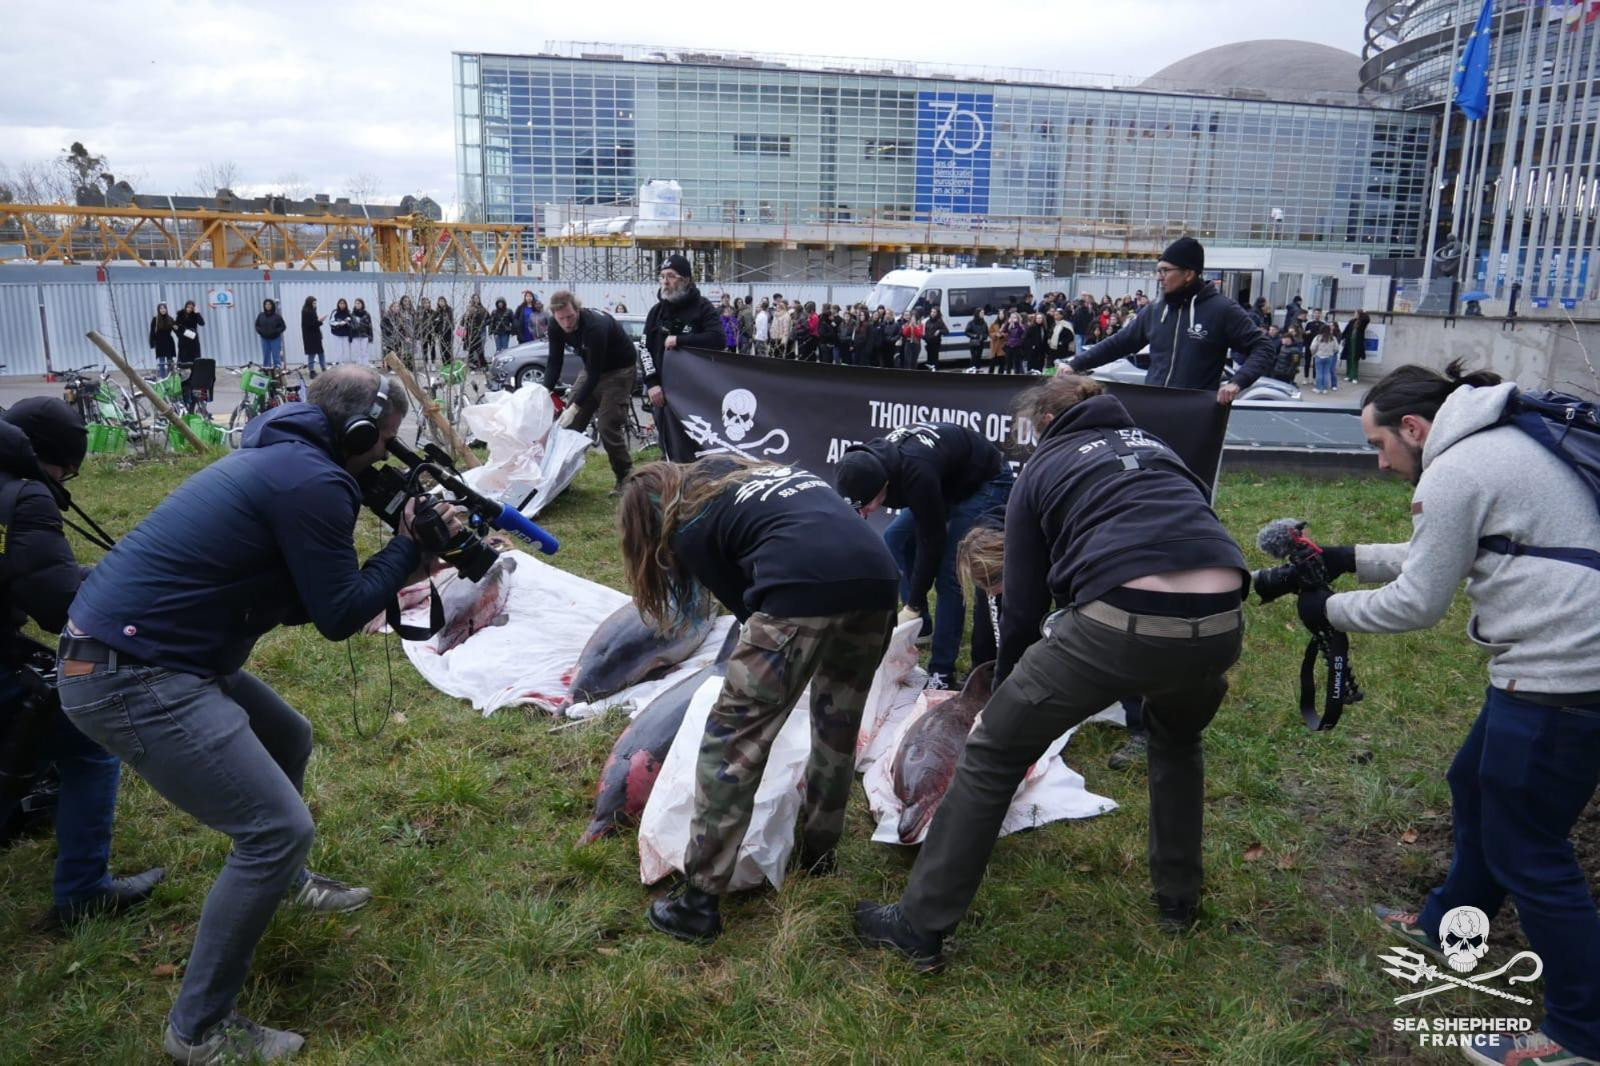 © Sea Shepherd France "On ne fait pas le lien entre la survie de l'océan et la nôtre" selon Lamya Essemlali, fondatrice et présidente de Sea Shepherd France